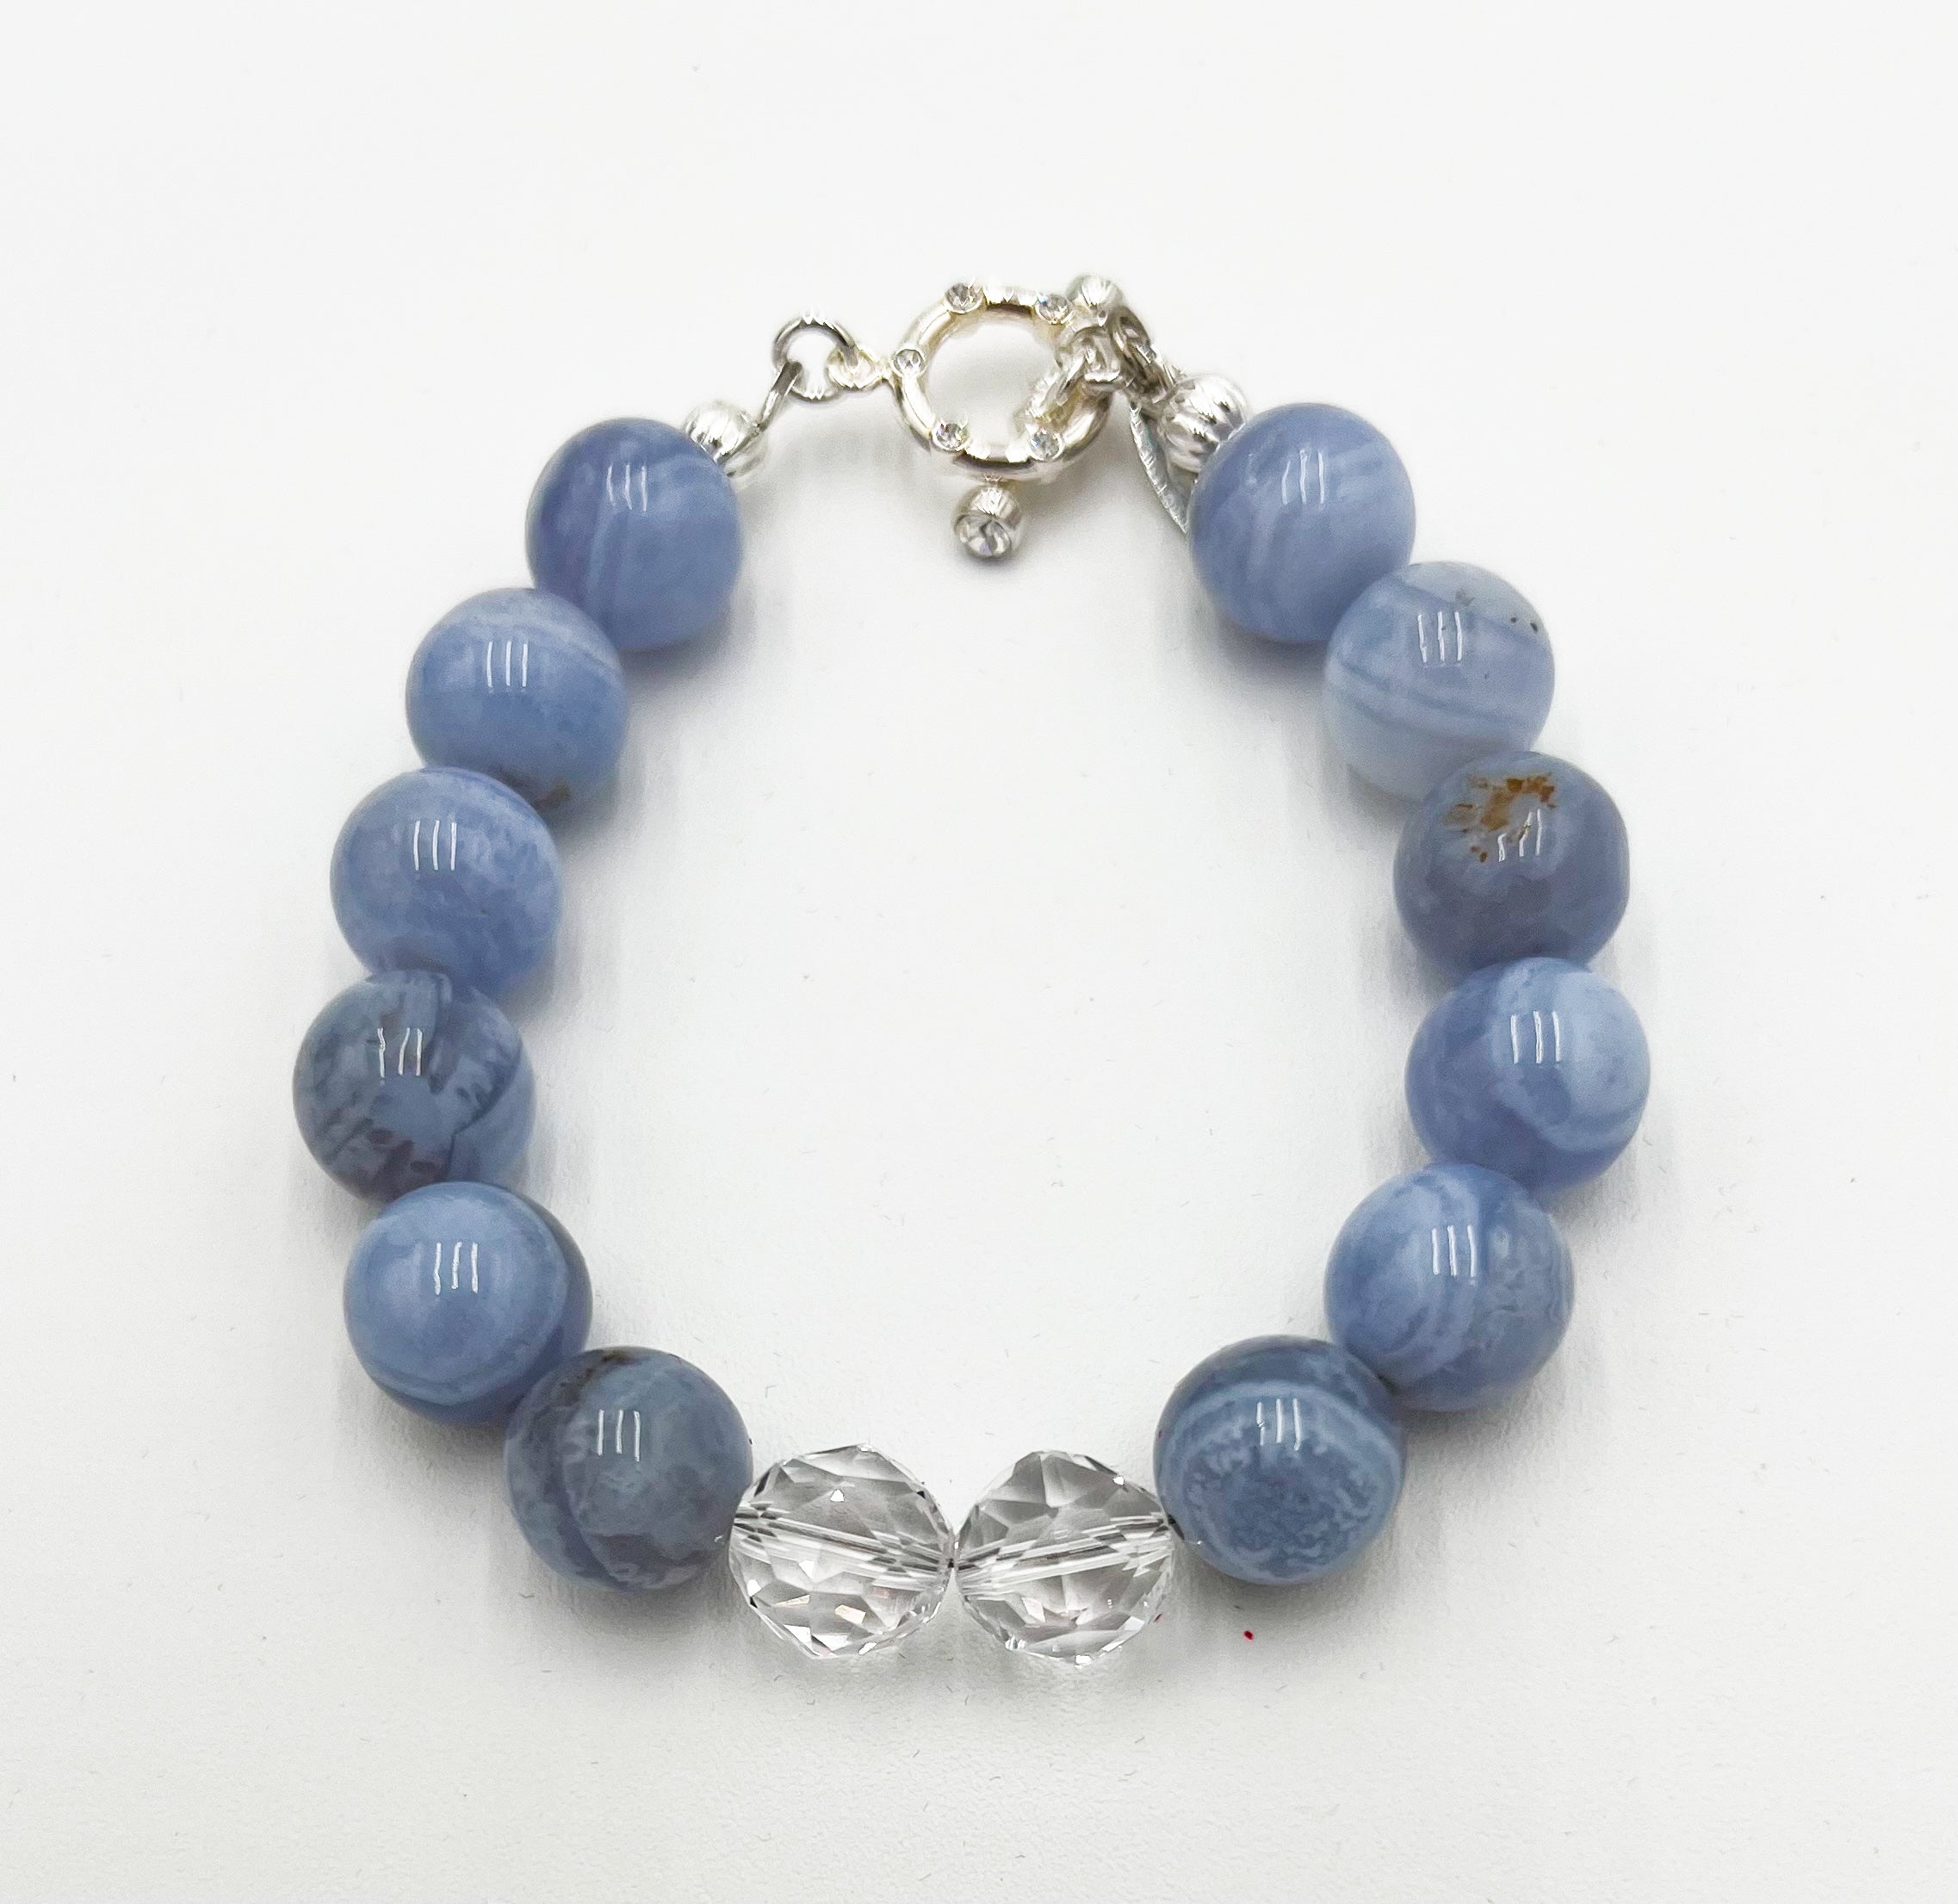 Blue Lace Agate & Natural Rock Quartz Bracelet 6 1/4"